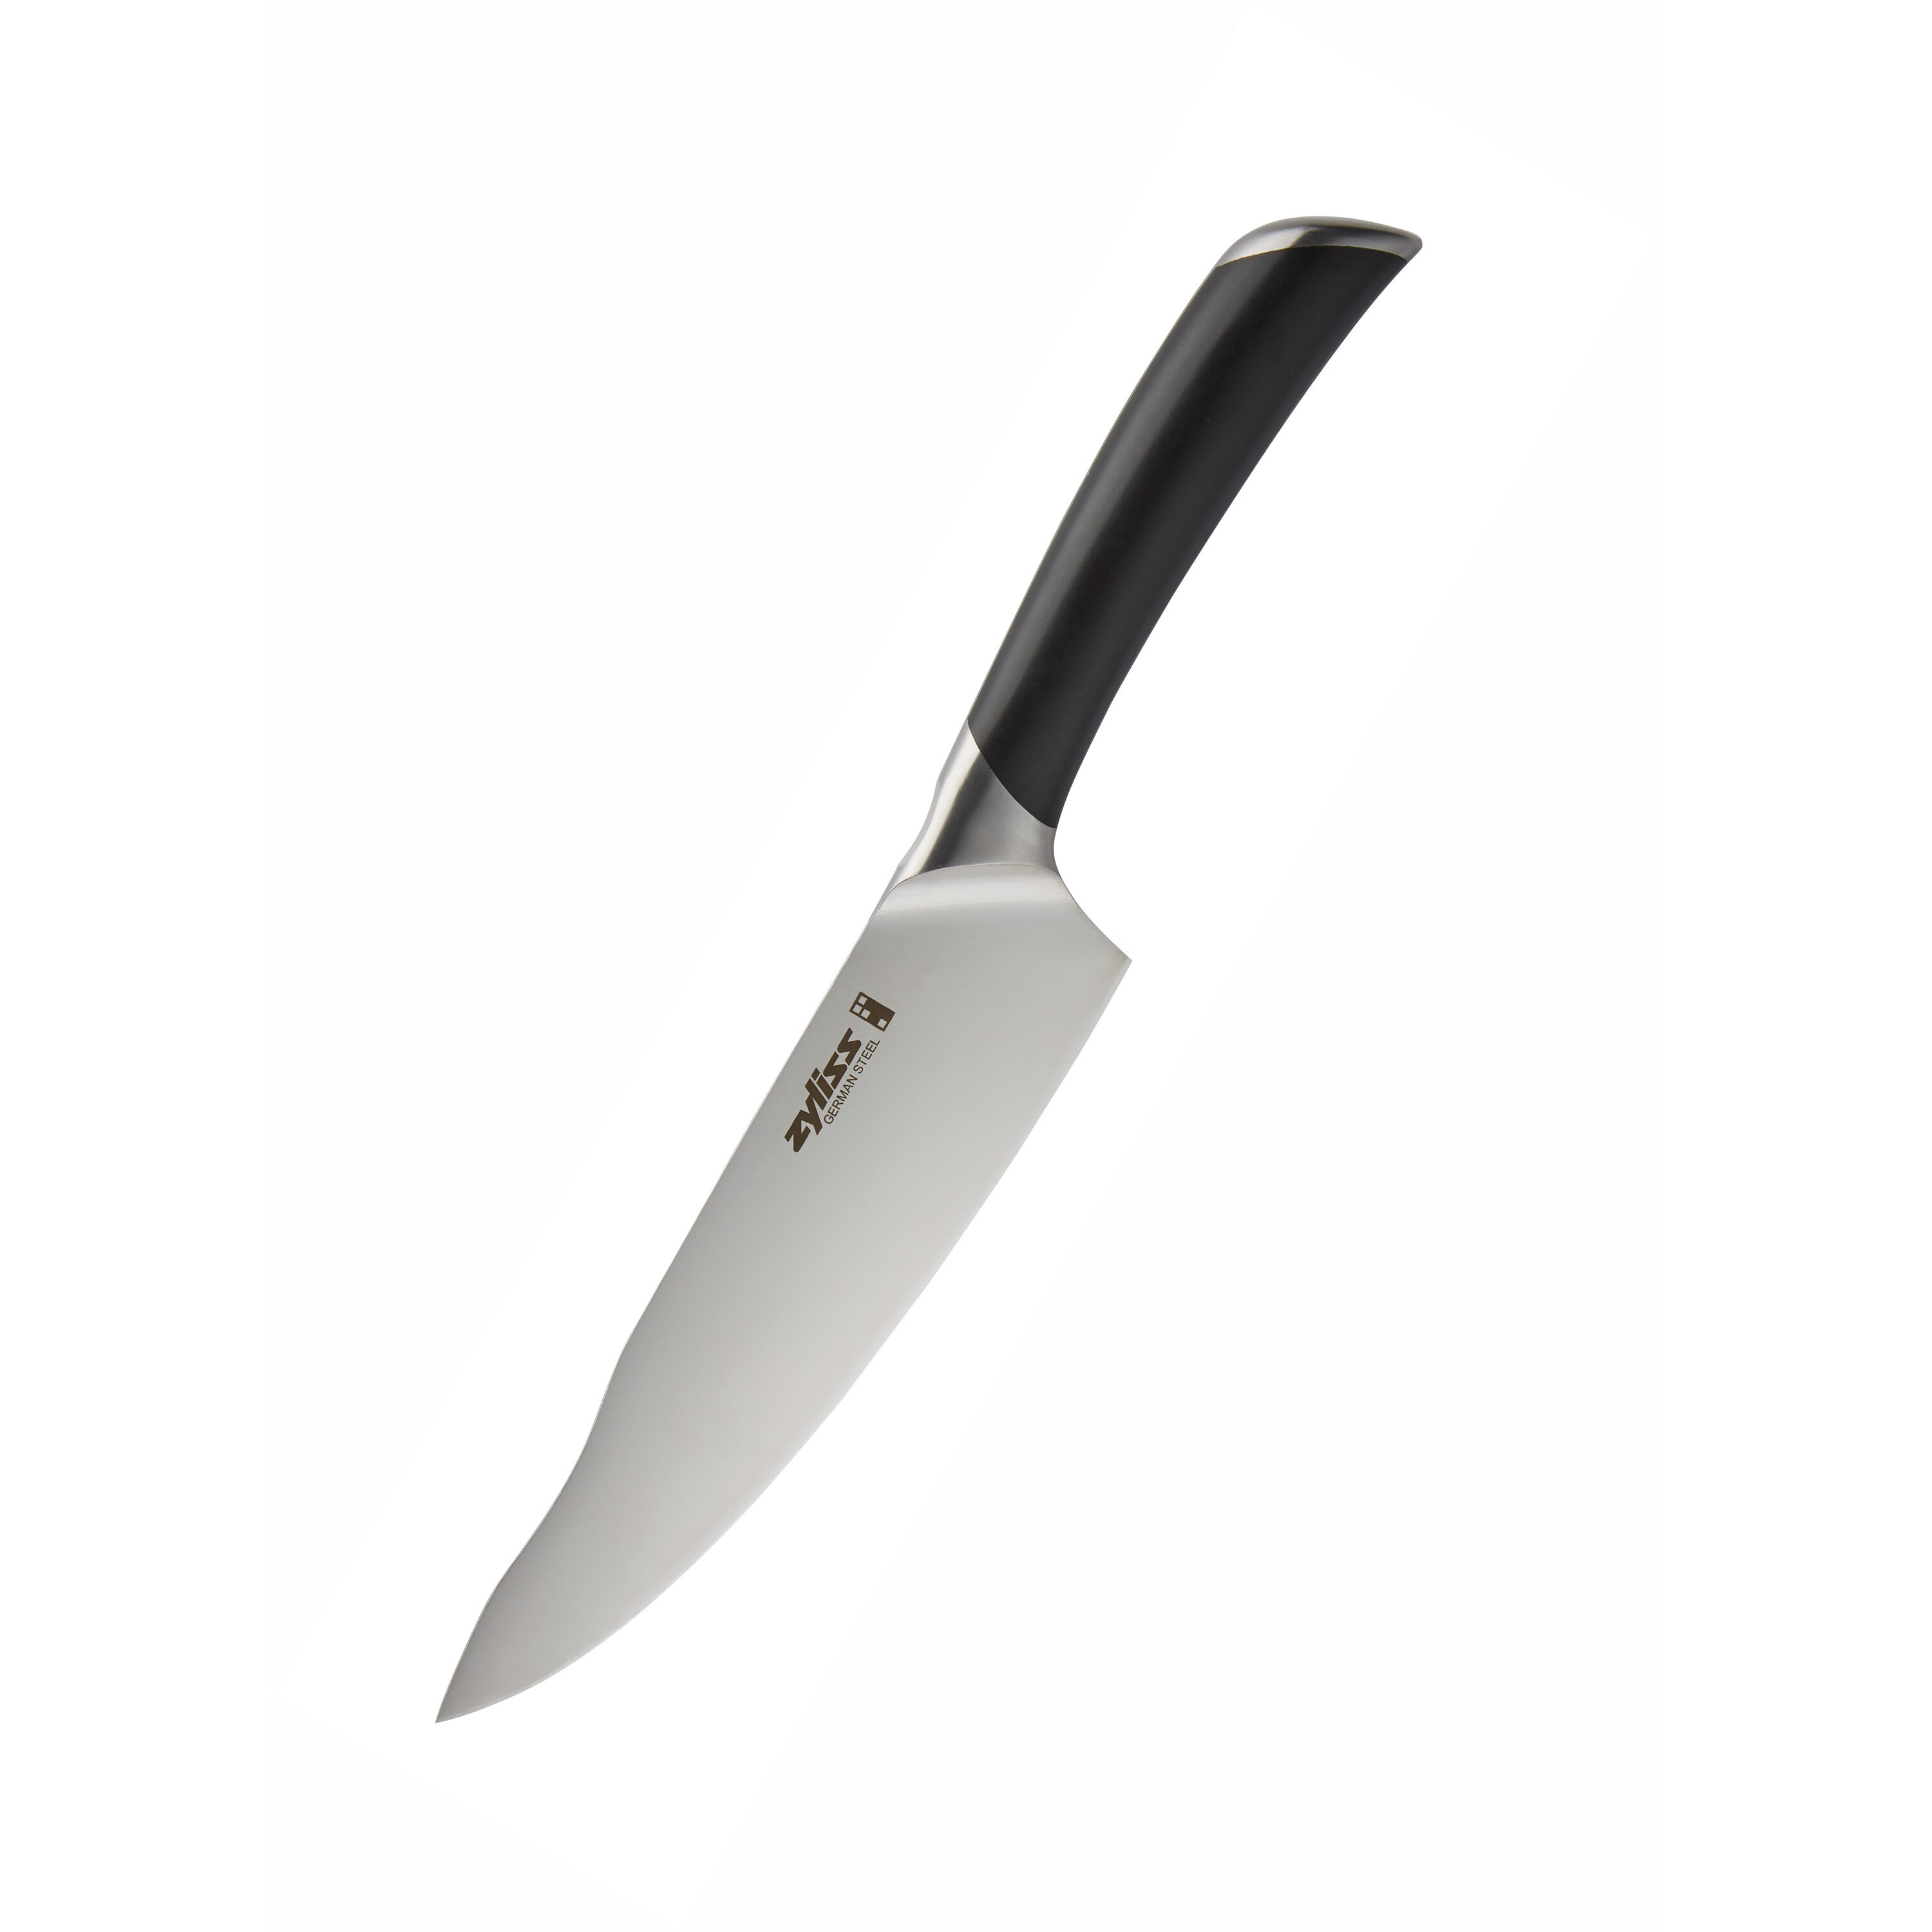 https://assets.wfcdn.com/im/01414230/compr-r85/1377/137778294/zyliss-8-comfort-pro-chefs-knife.jpg